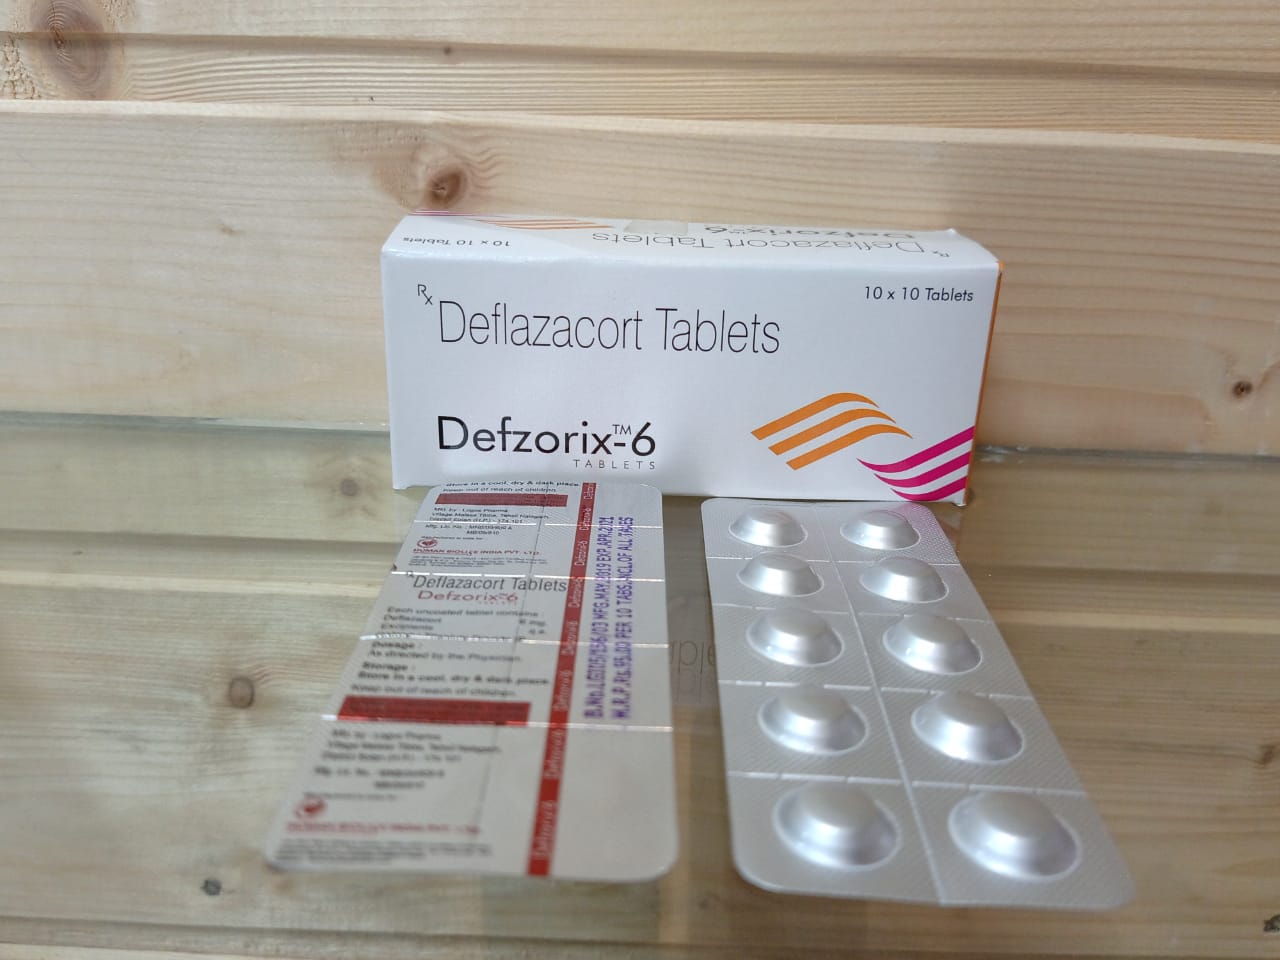 Defzorix 6 tablets